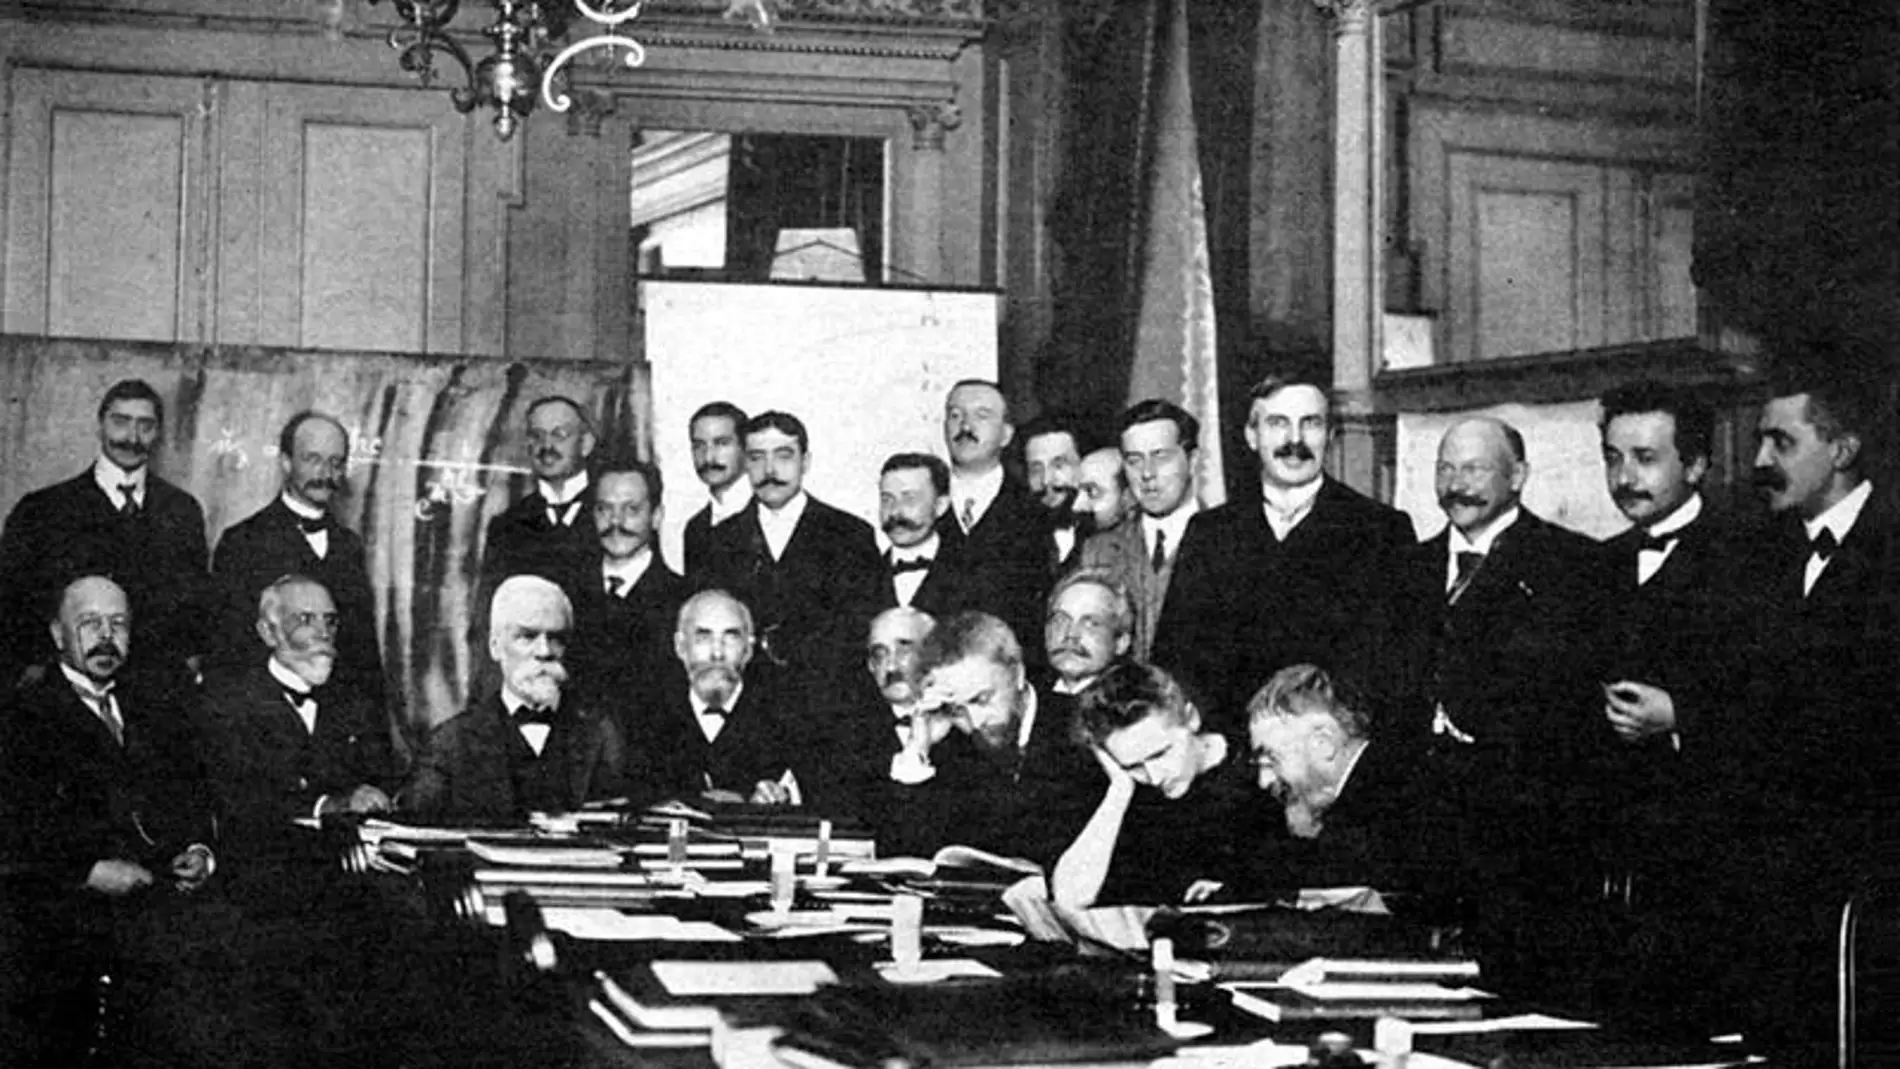 Foto de grupo de la Conferencia Solvay de 1911